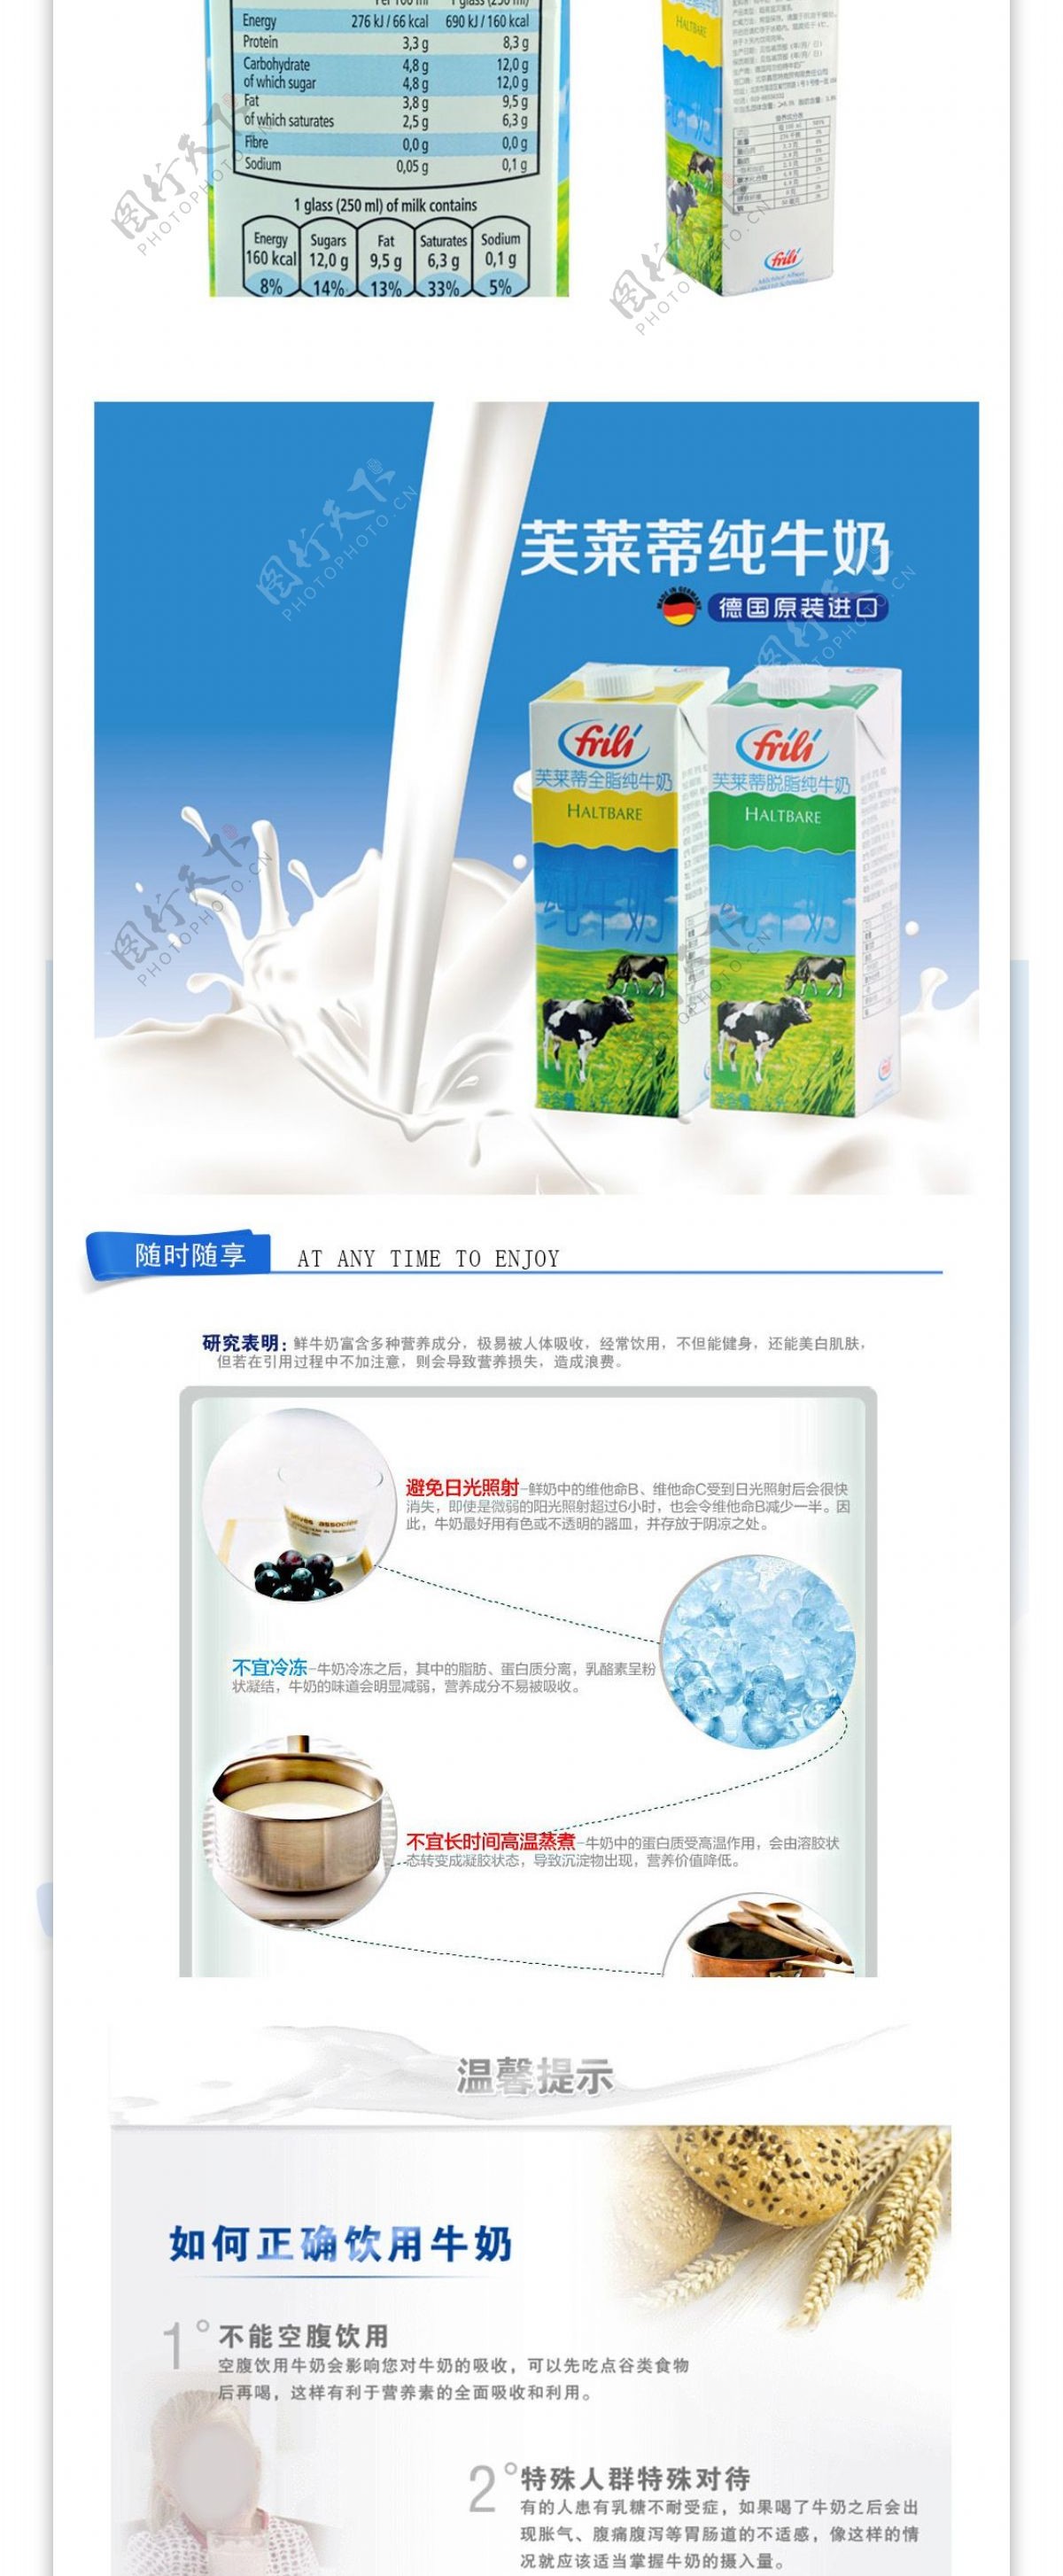 德国芙莱迪脱脂纯牛奶移动设备终端网页设计